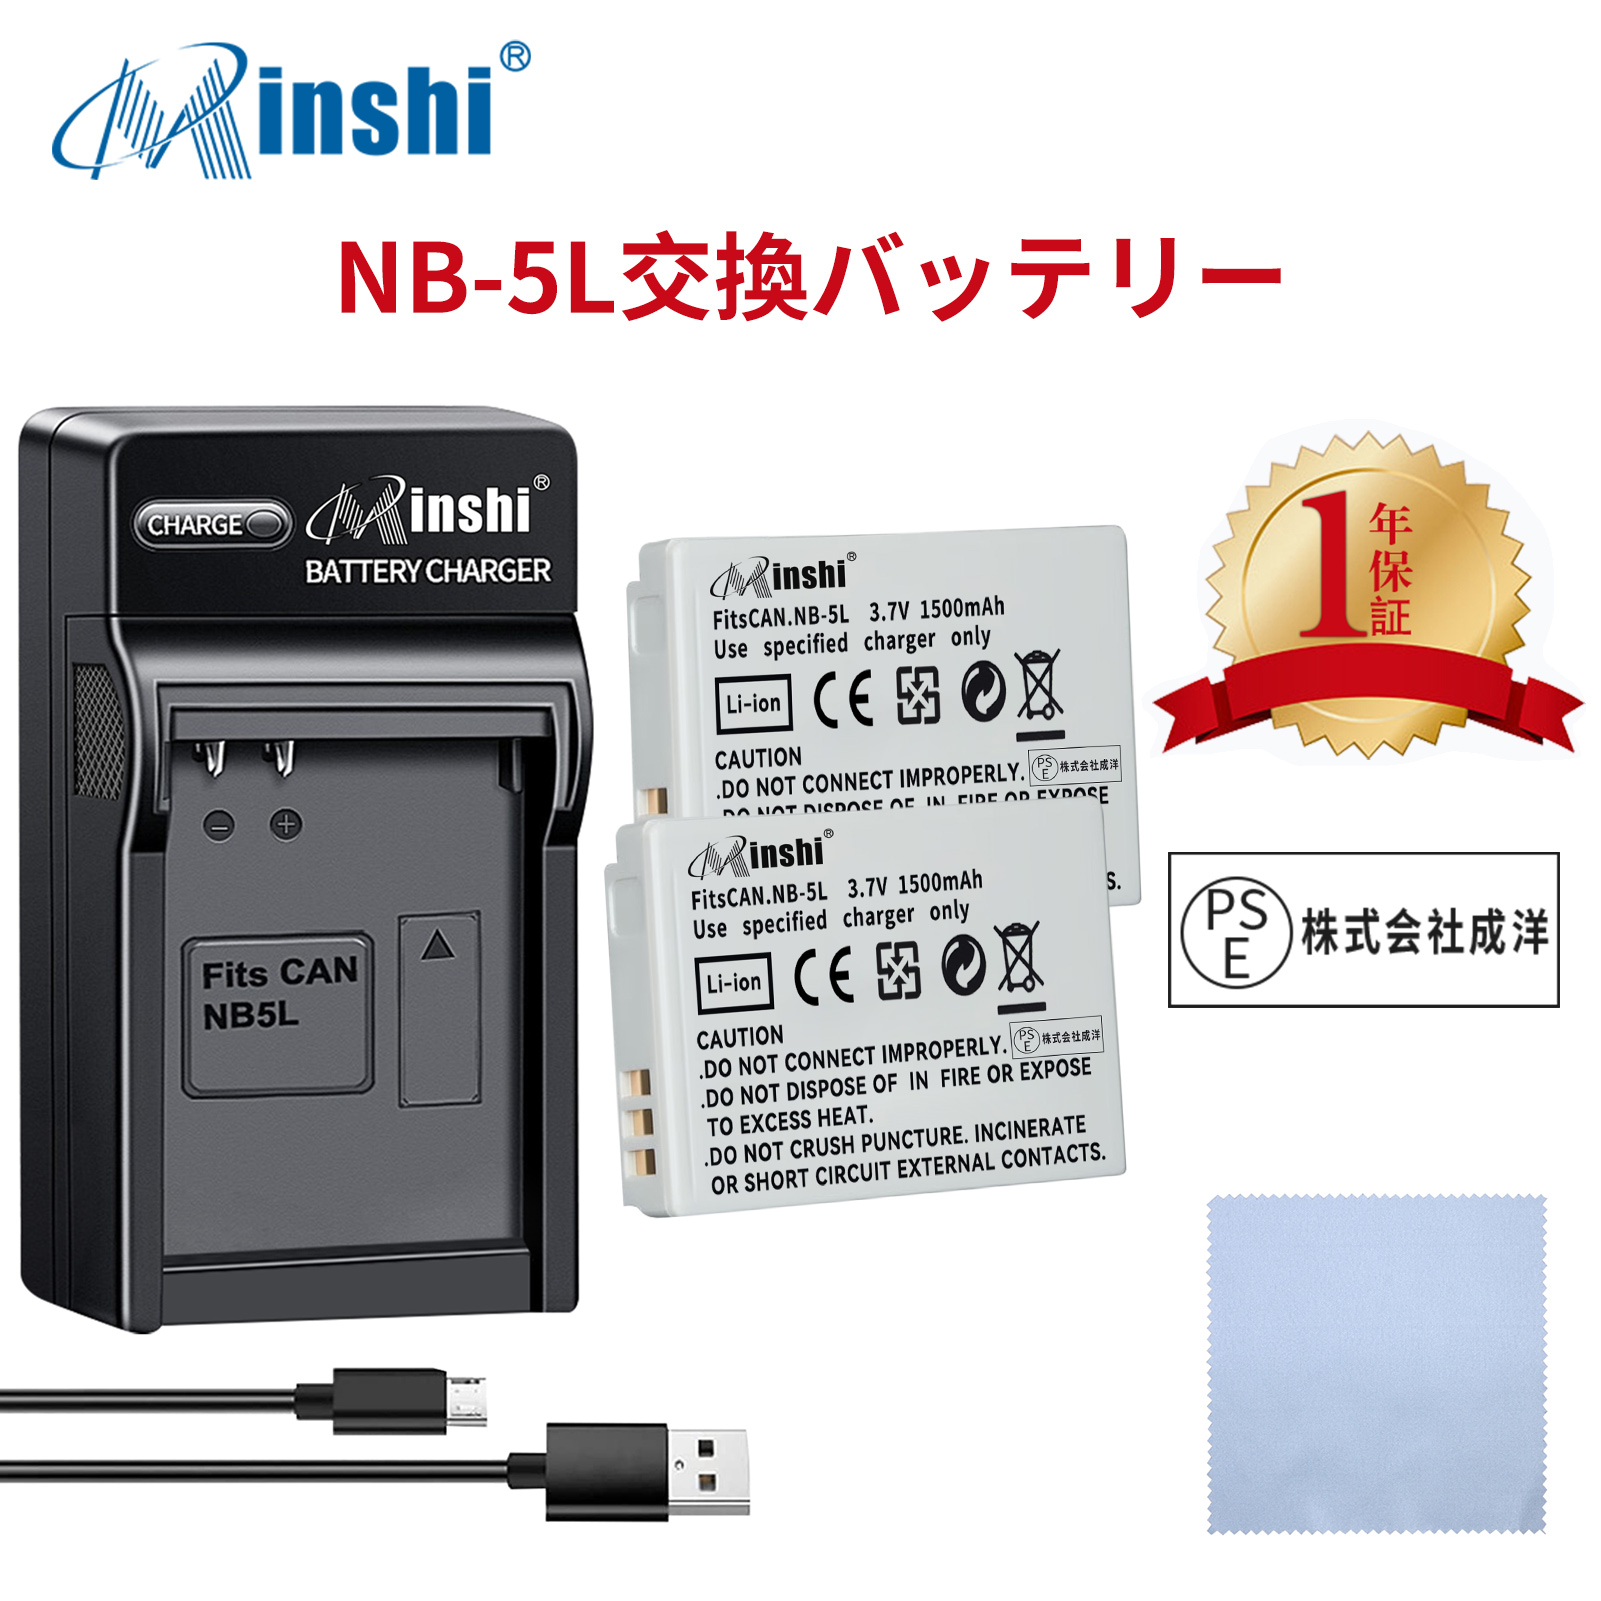 【セット】minshi CANON 830IS 【1500mAh 3.7V】PSE認定済 高品質 NB-5L 交換用バッテリー【2個】